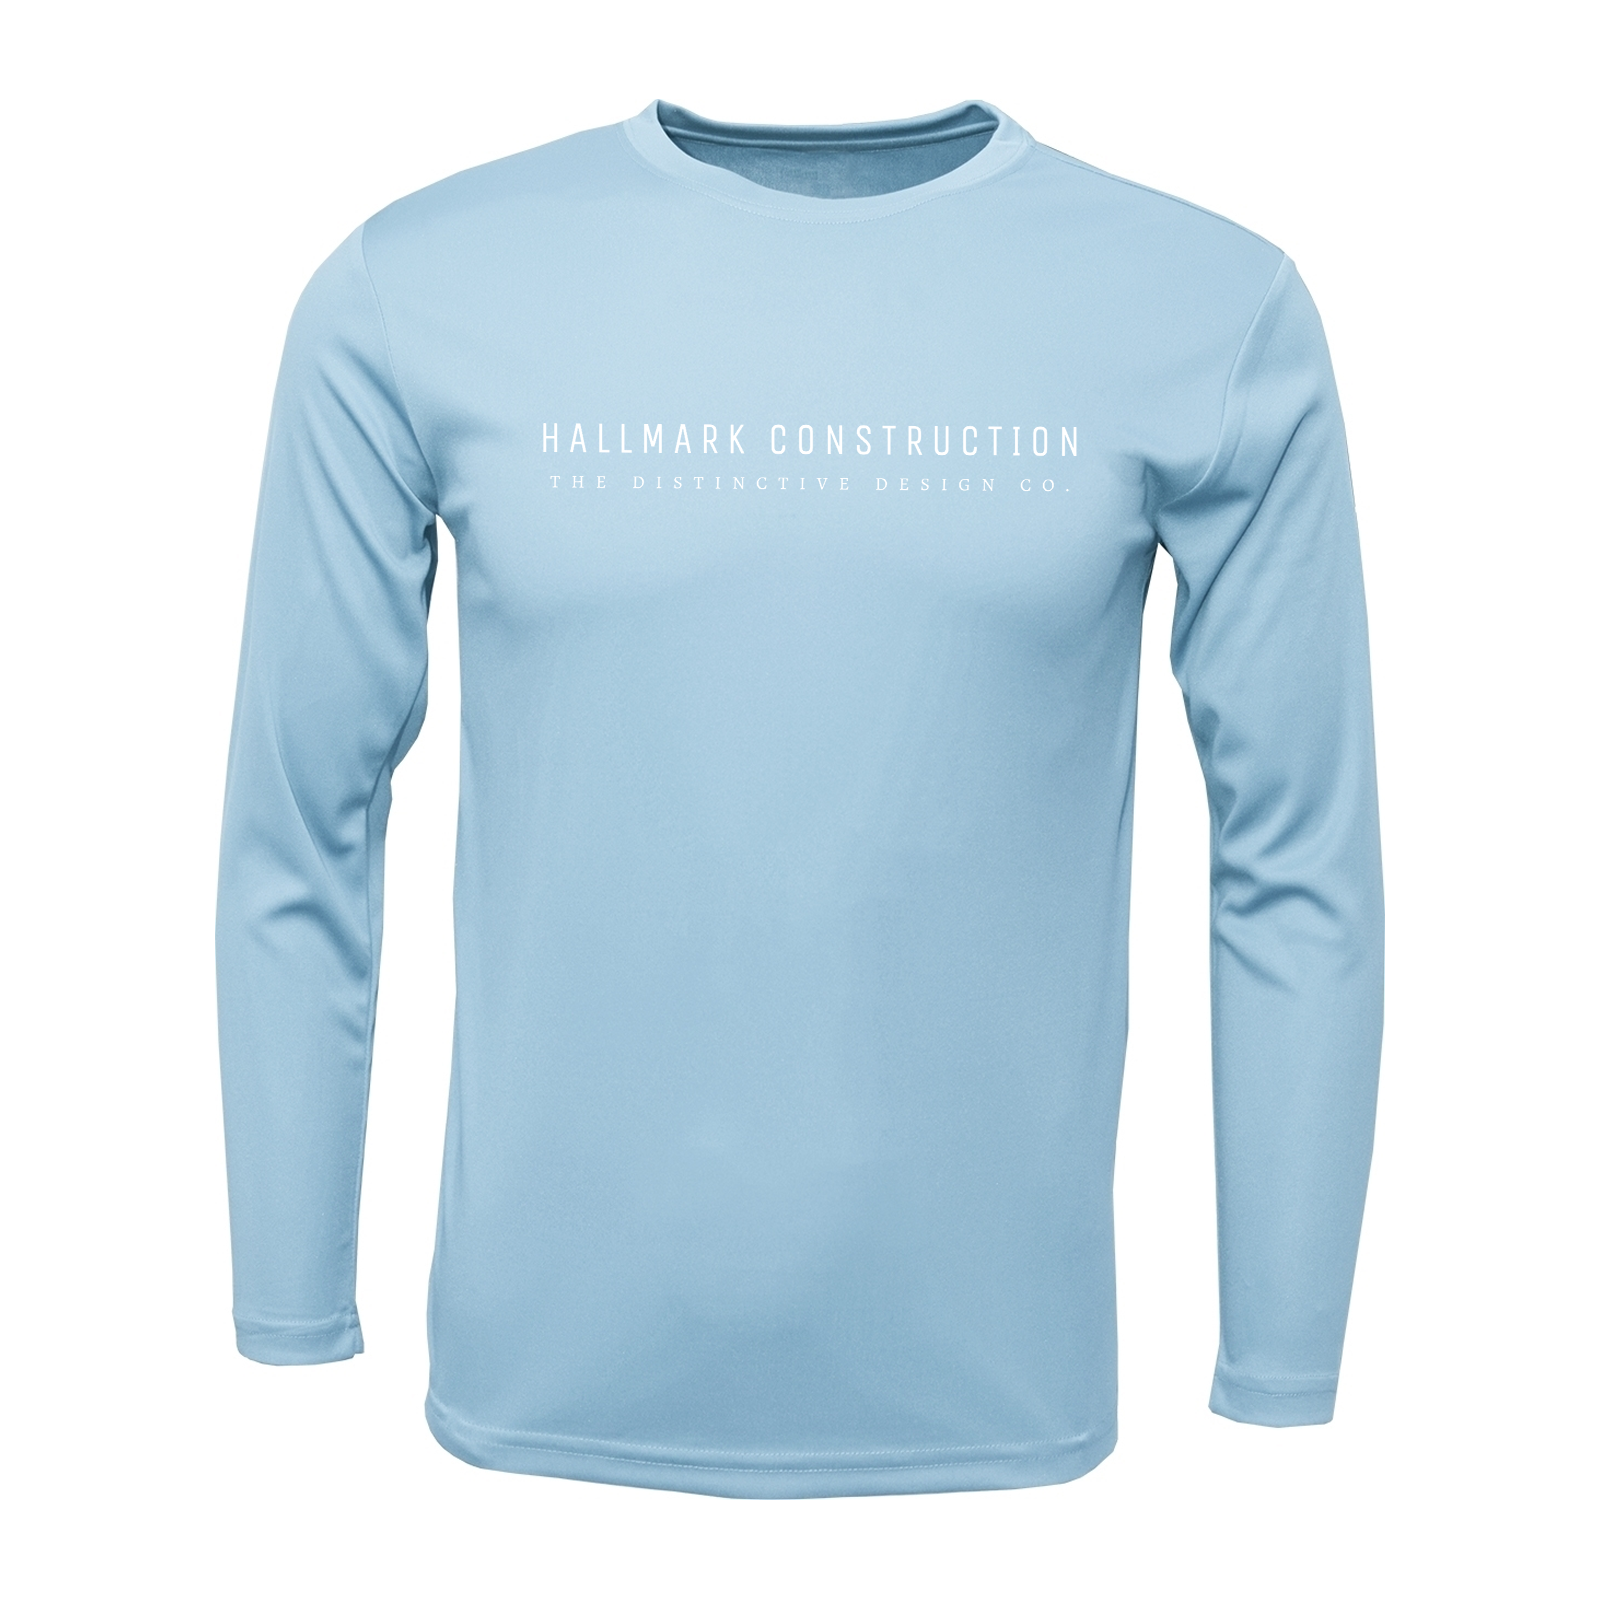 BAW Athletic Wear XT96 / XT96H - Men's Xtreme-Tek Long Sleeve Shirt